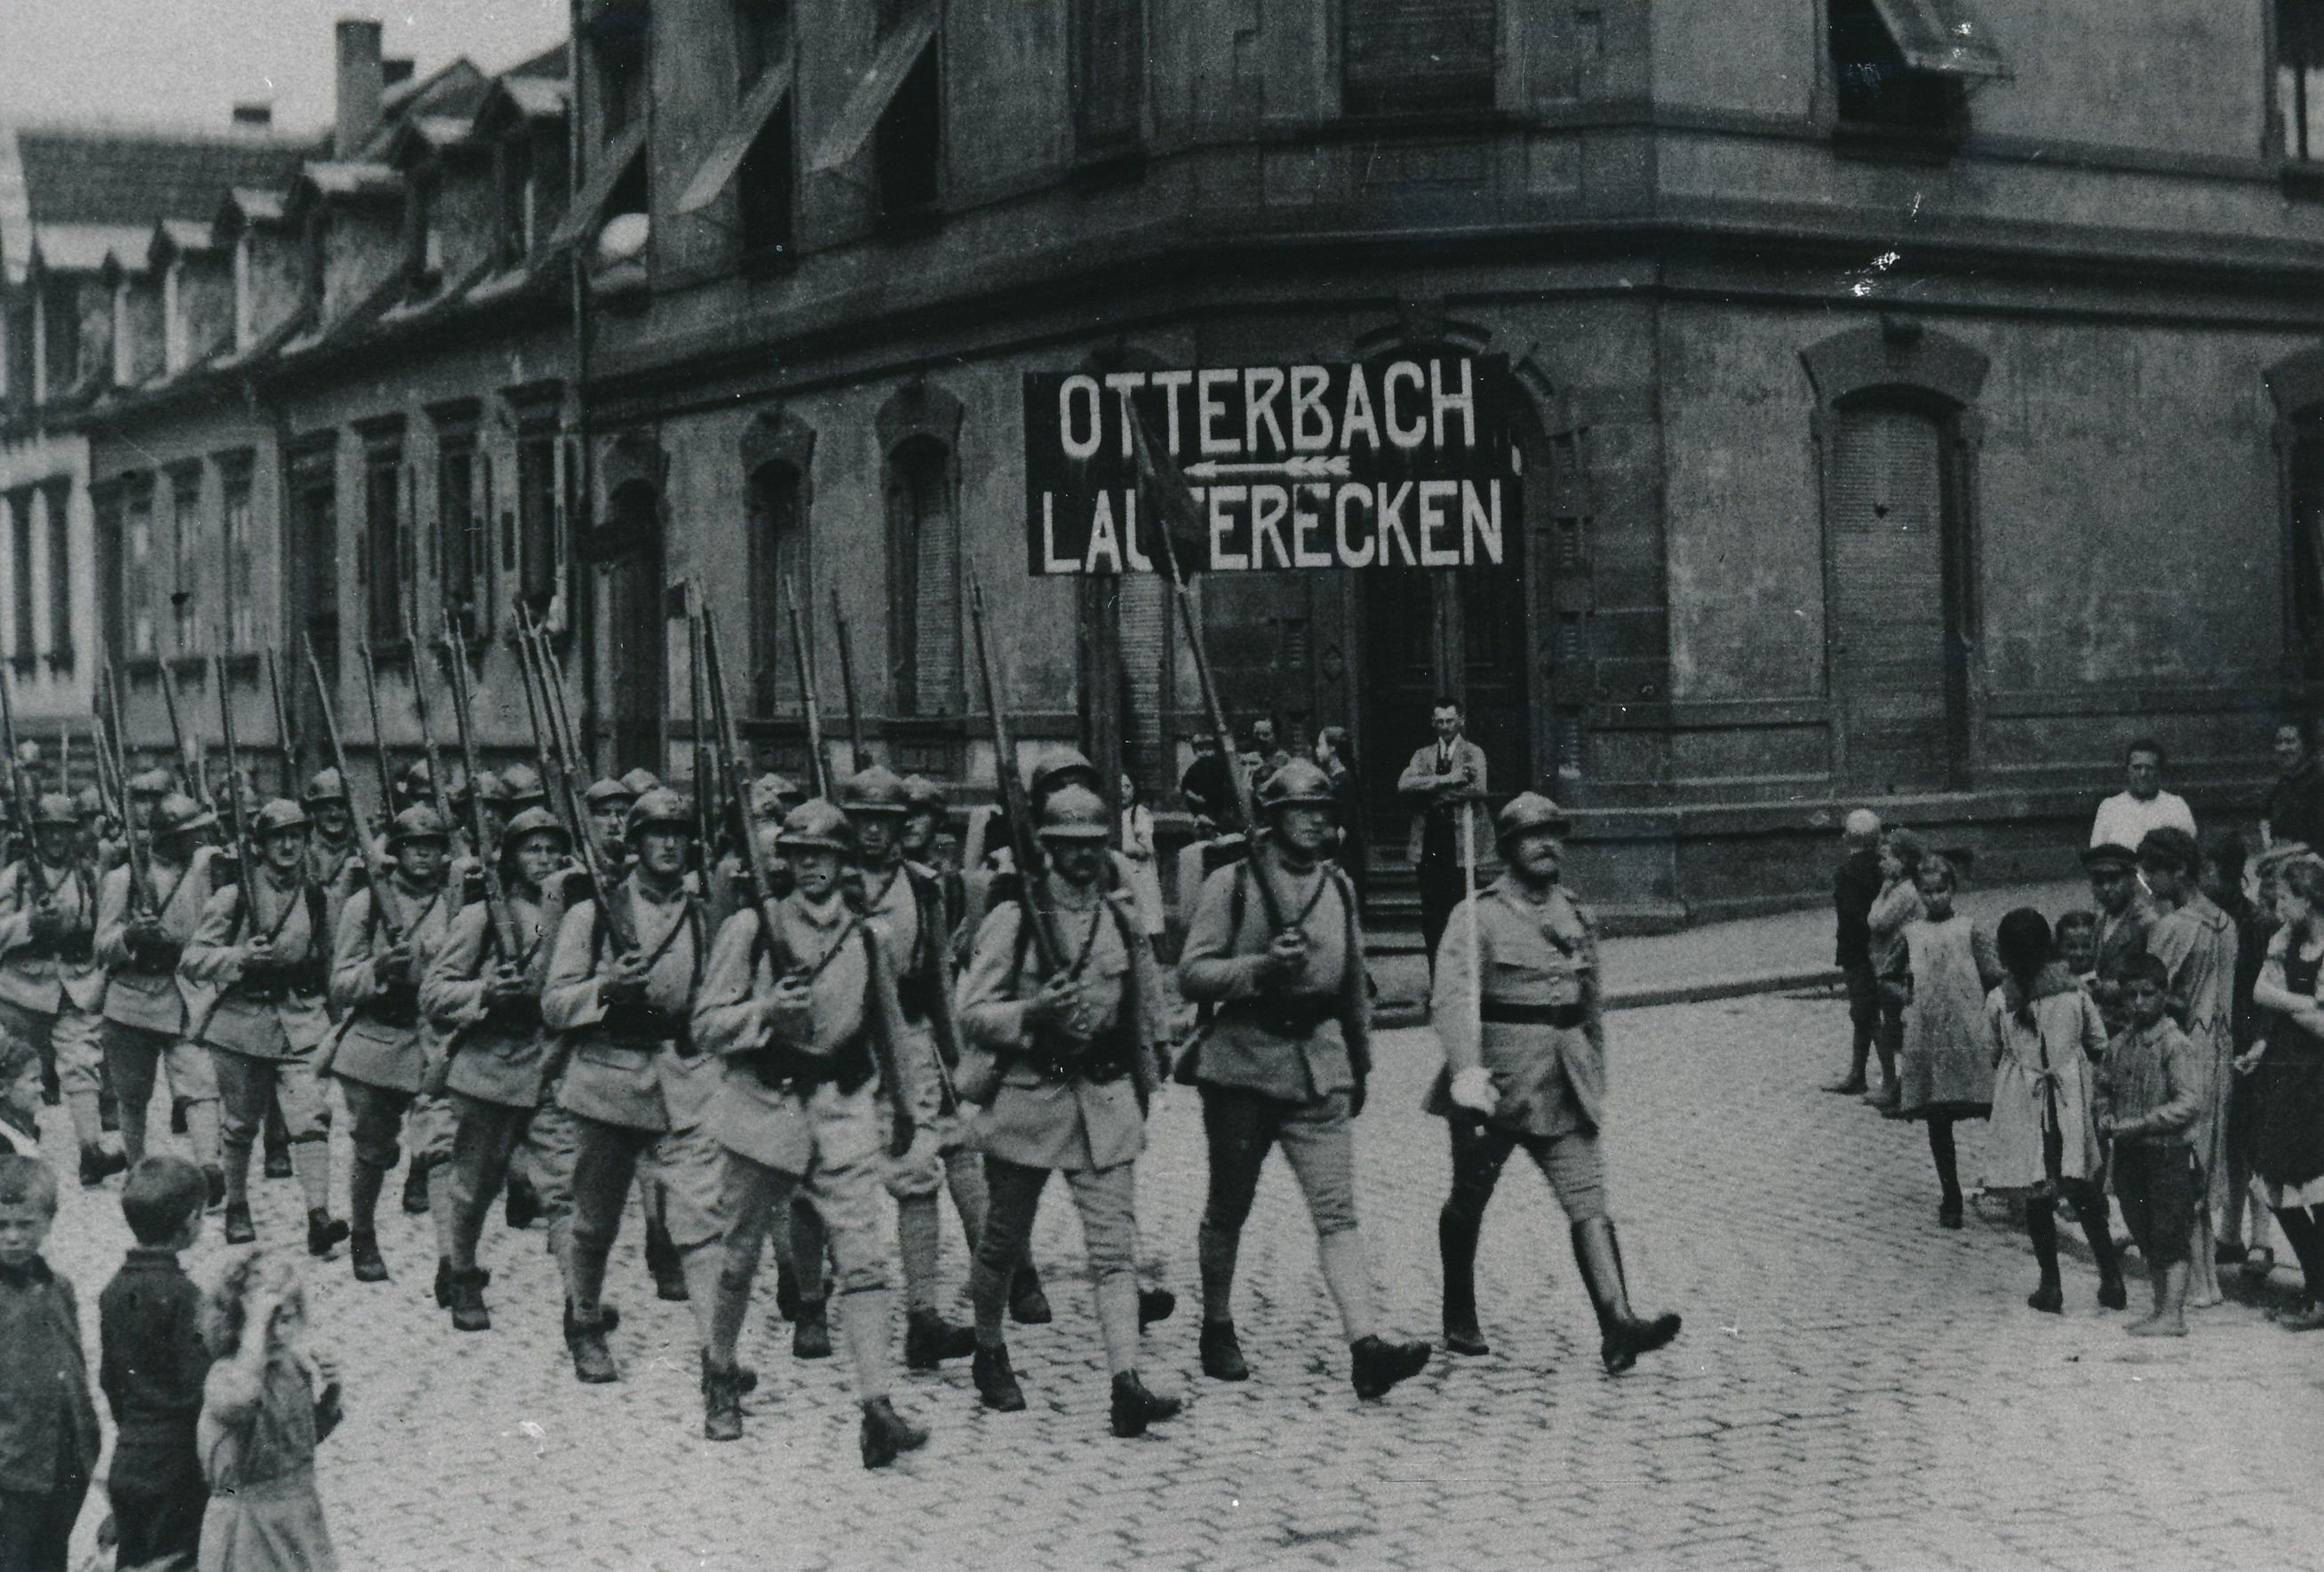 Eine Kolonne französischer Soldaten, jeweils 4 pro Reihe, marschiert über eine Straße, beobachtet von Kindern. Zwei der Soldaten in der ersten Reihe halten ein Schild auf dem Otterbach steht.